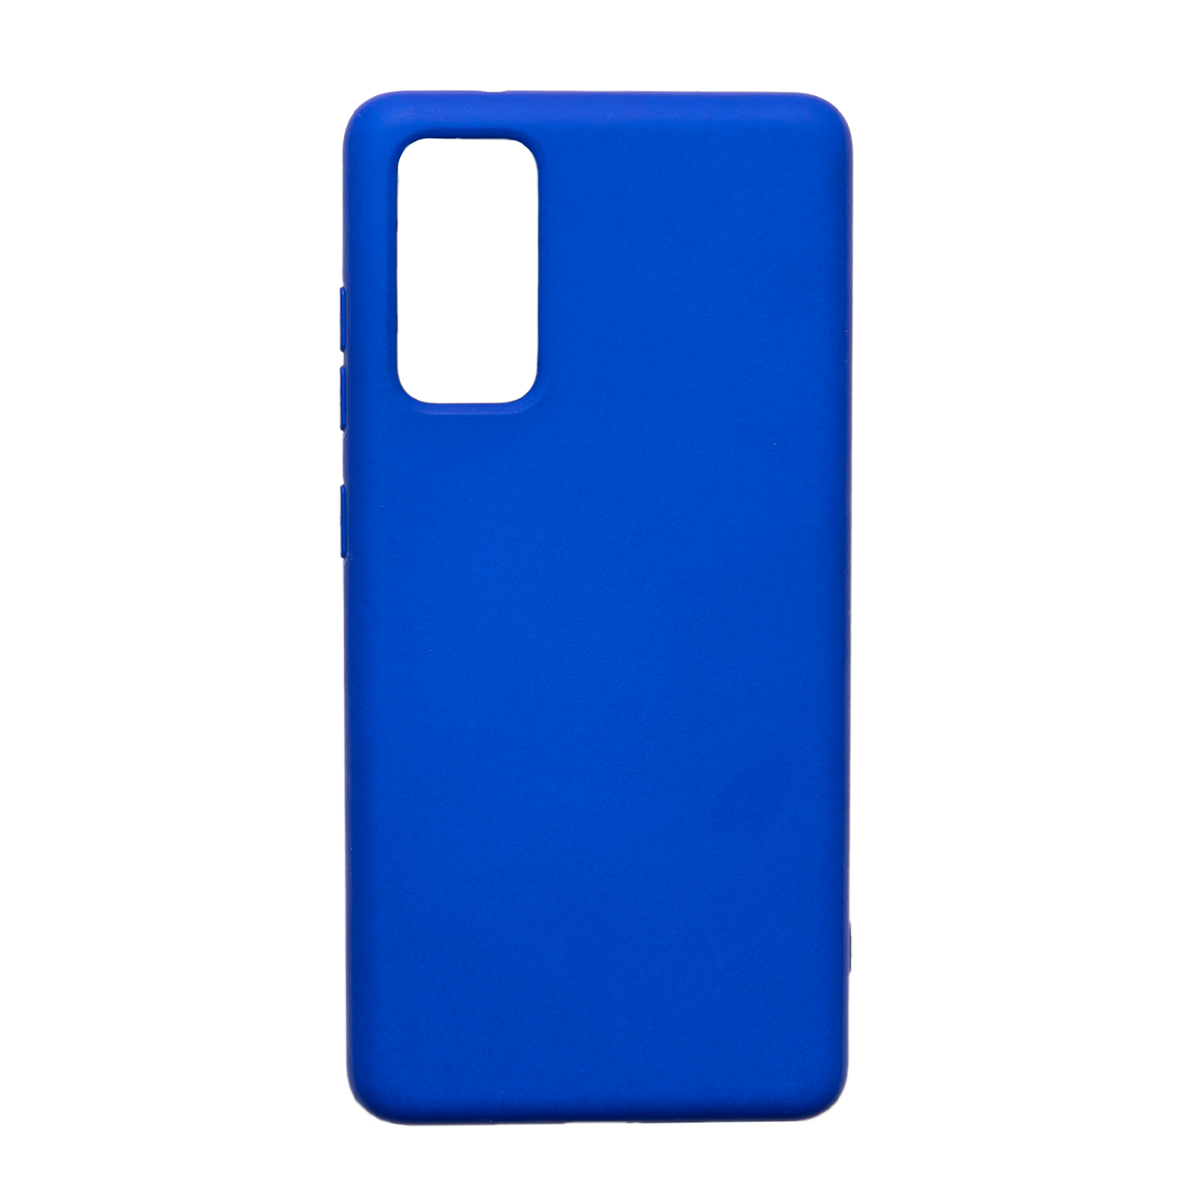  کاور سیلیکونی مناسب برای گوشی موبایل سامسونگ Galaxy S20 FE